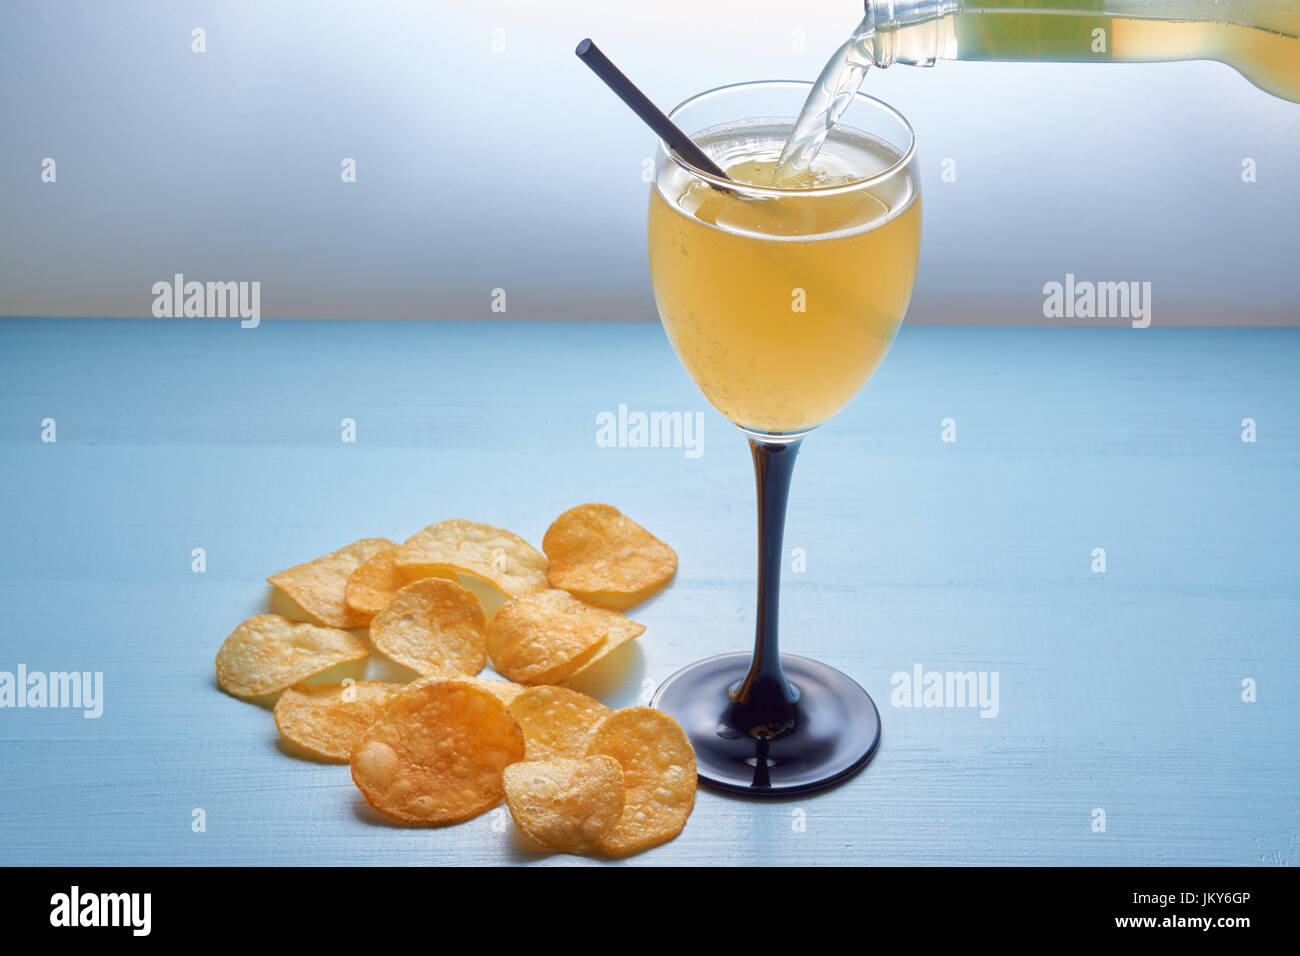 Verter mezcla de bebidas cocktail agitar en cristal con paja para beber y patatas fritas. sobre fondo azul limpio Foto de stock